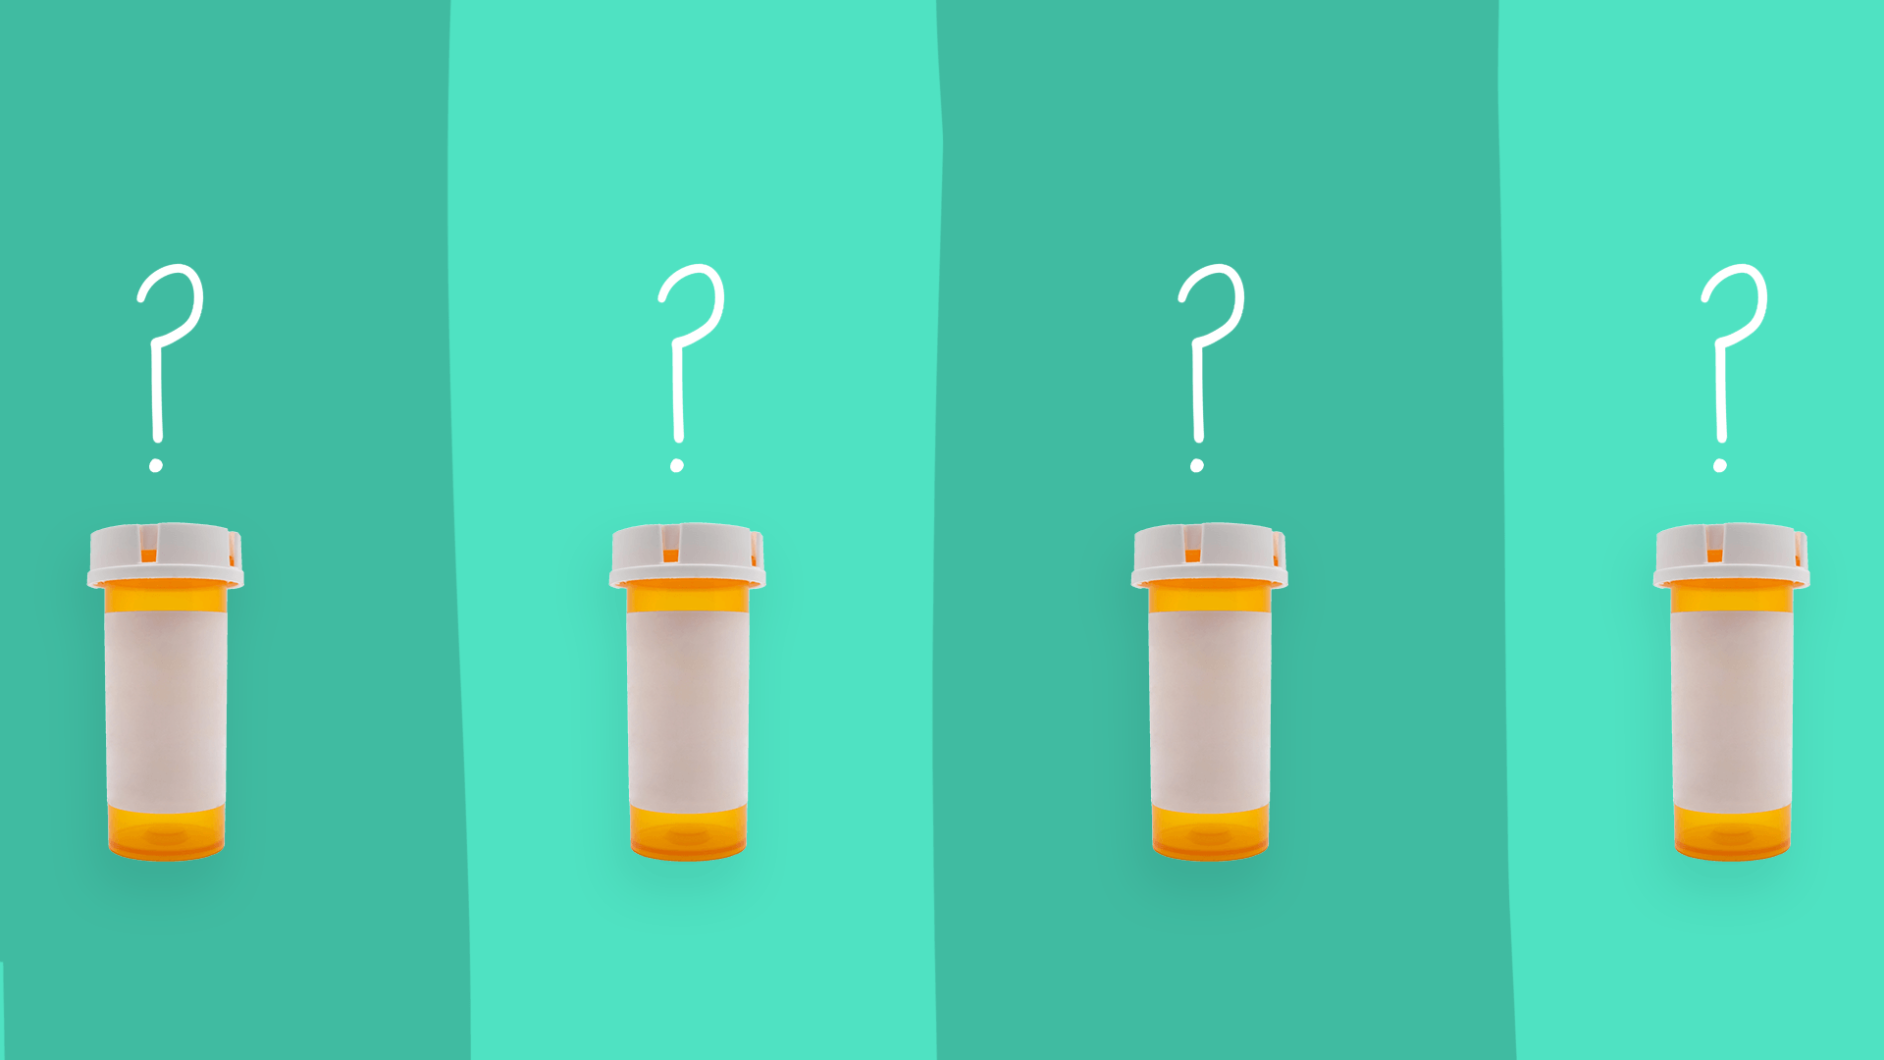 Multiple pill bottles represent Look alike sound alike drugs